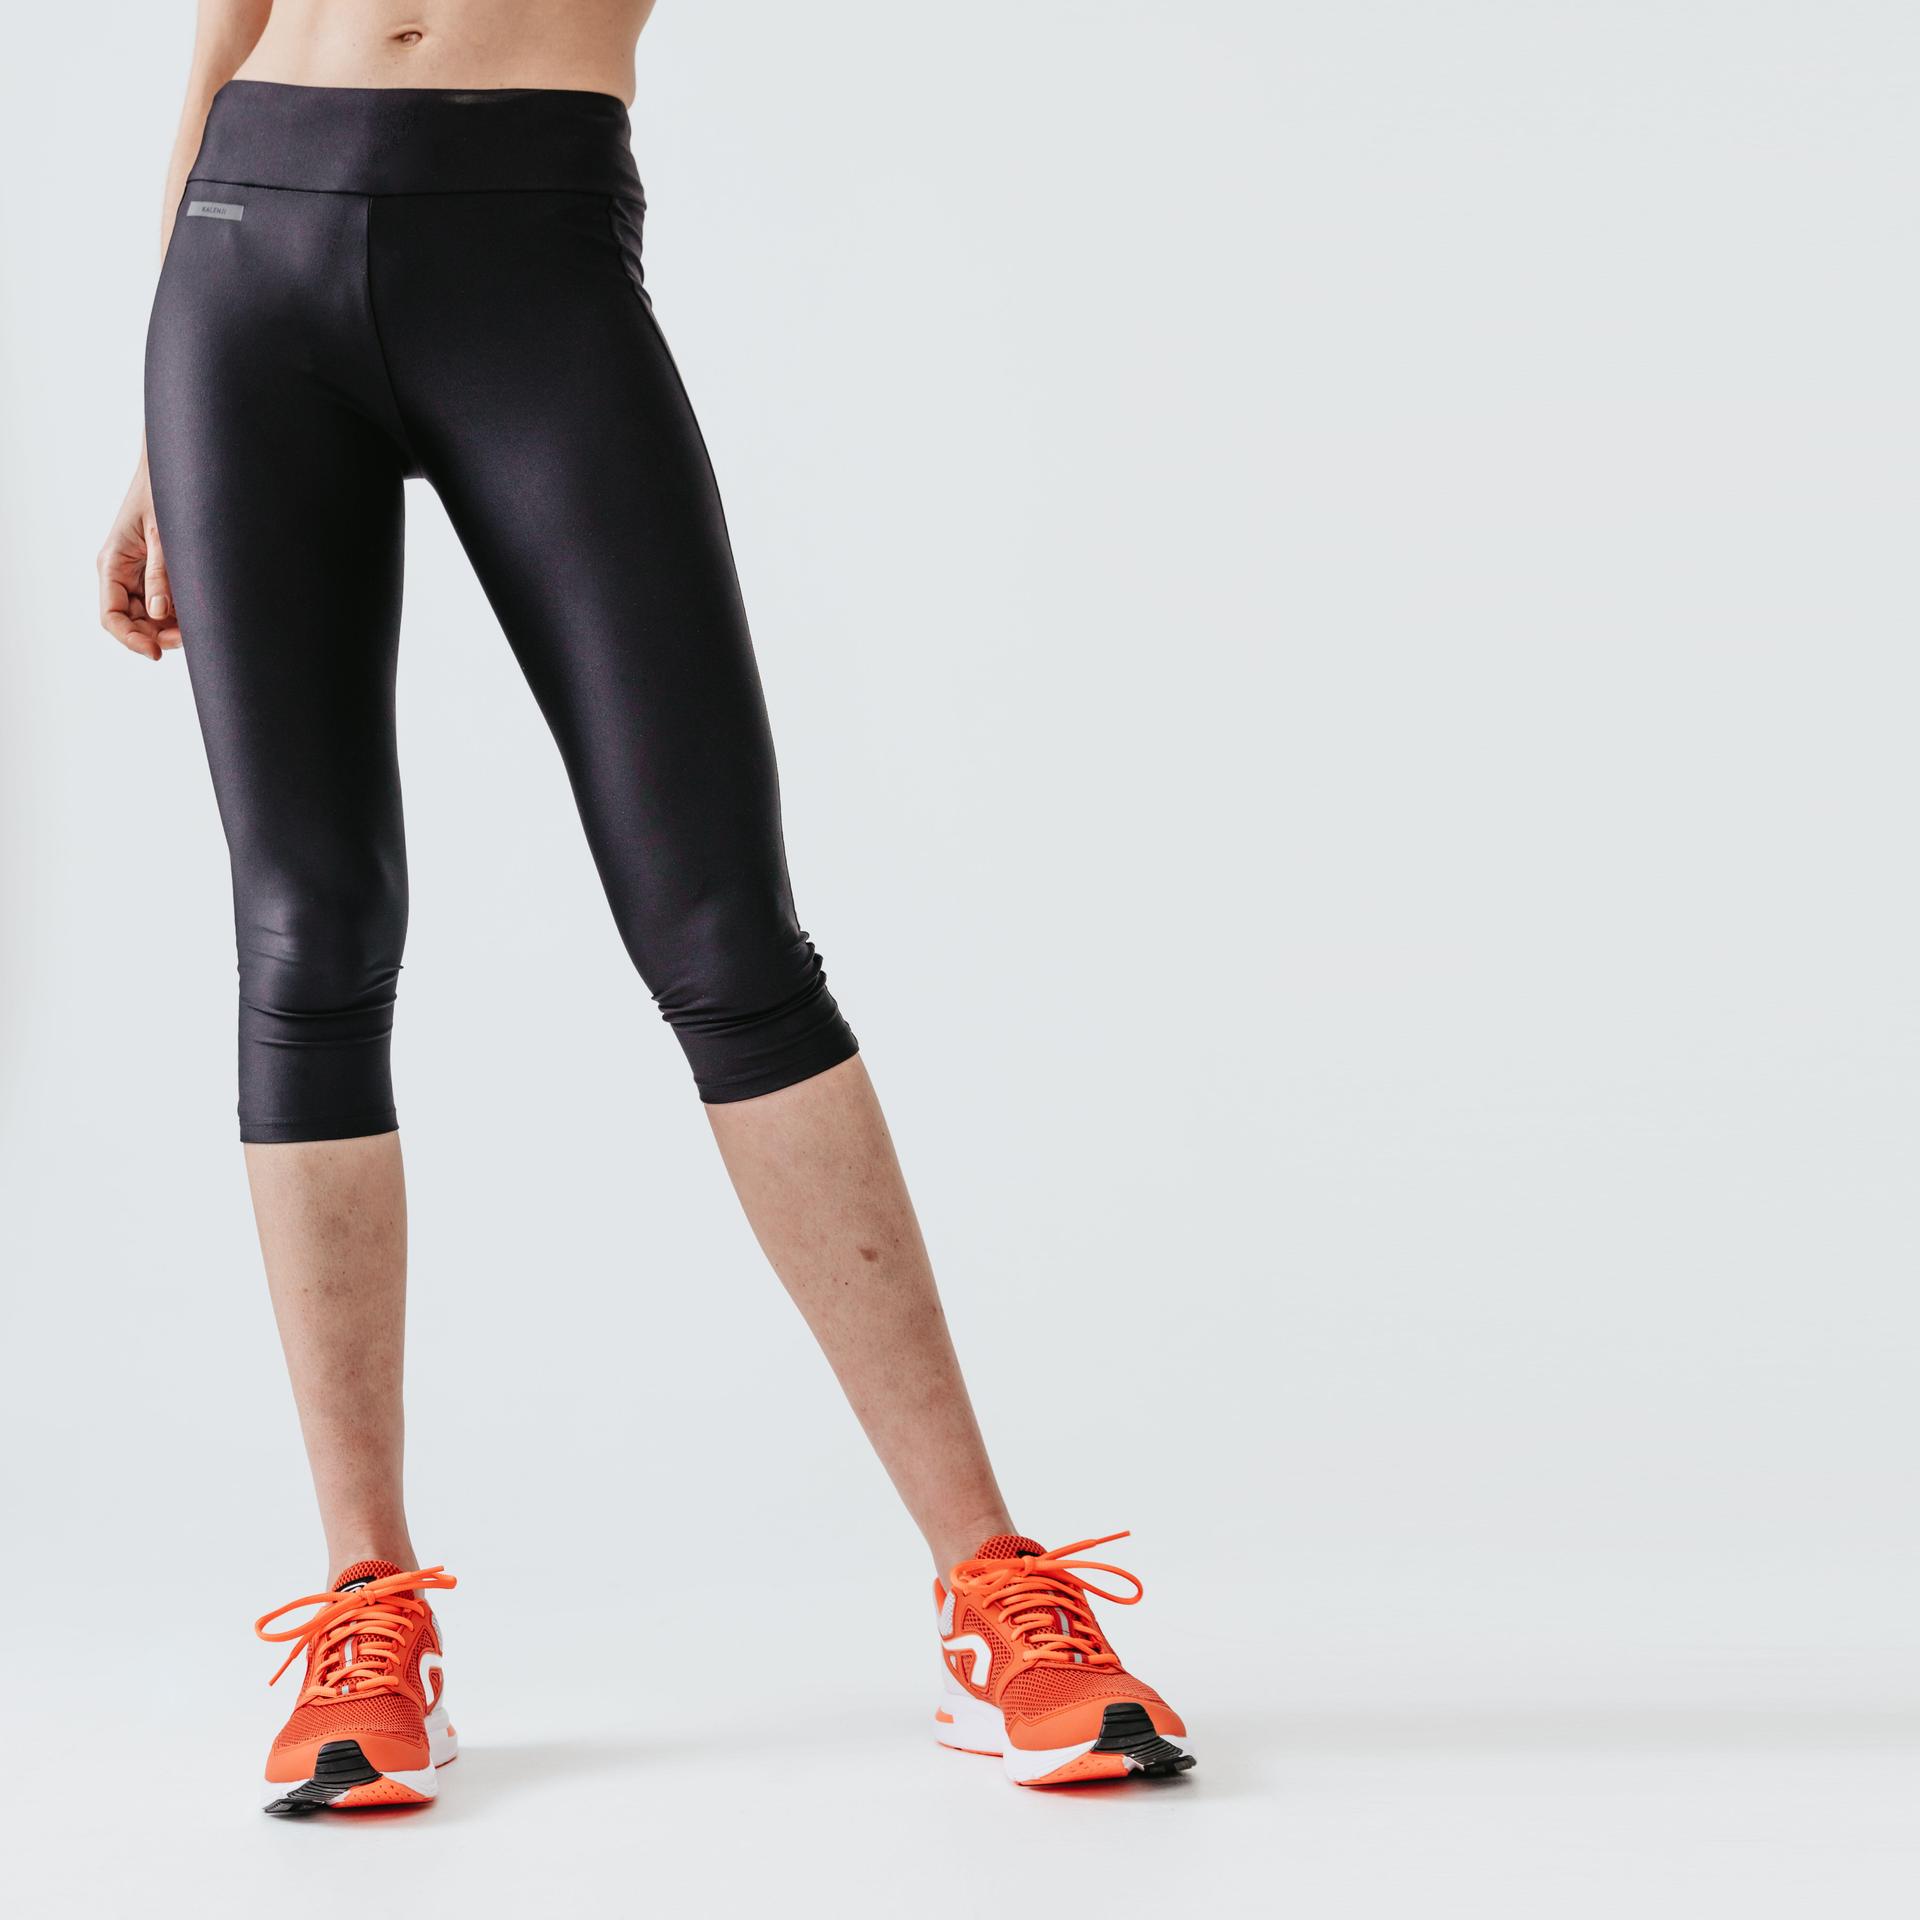 women's-short-running-leggings-dry---black